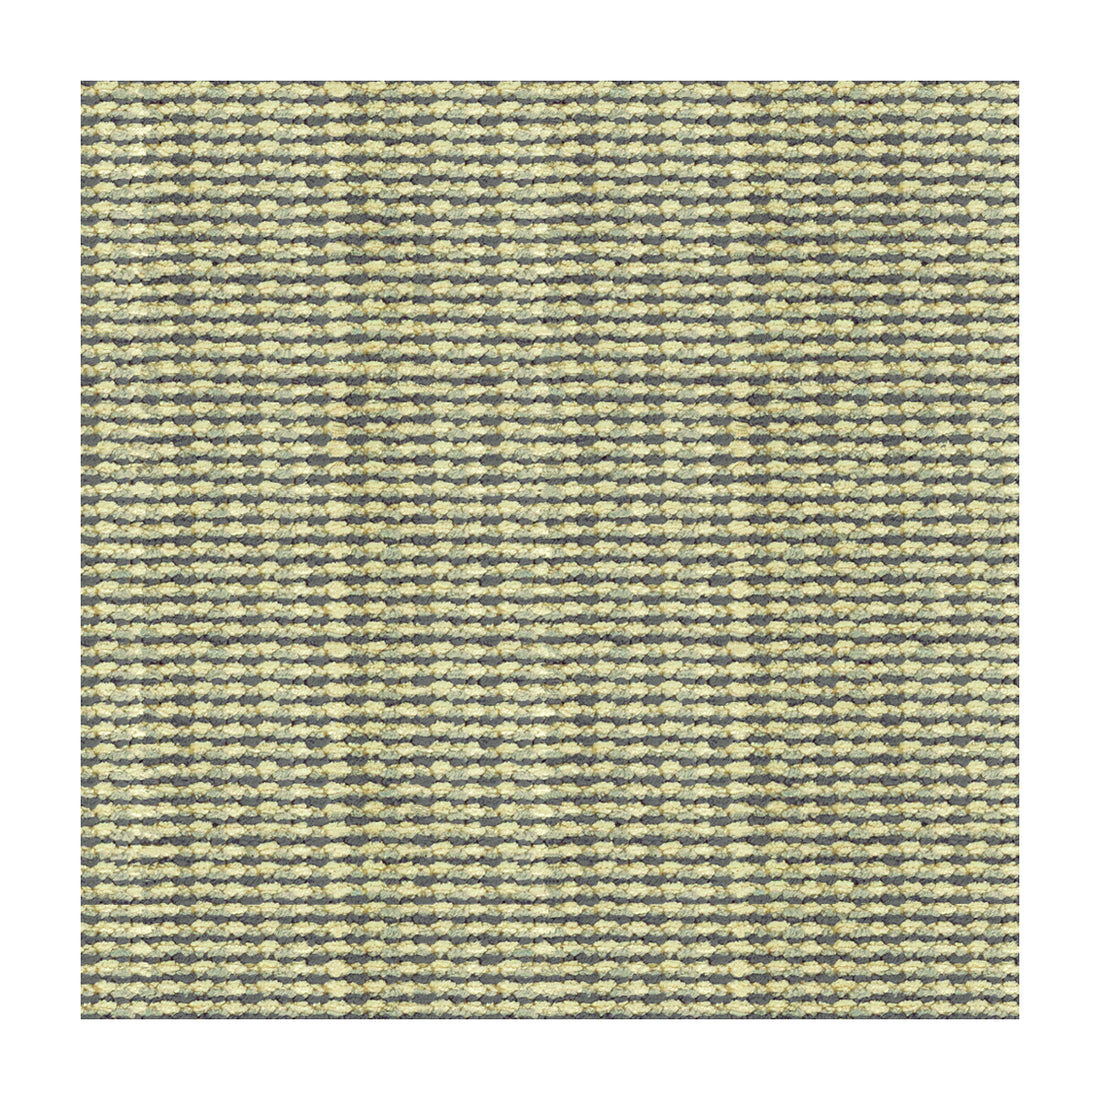 Kravet Design fabric in 28508-516 color - pattern 28508.516.0 - by Kravet Design